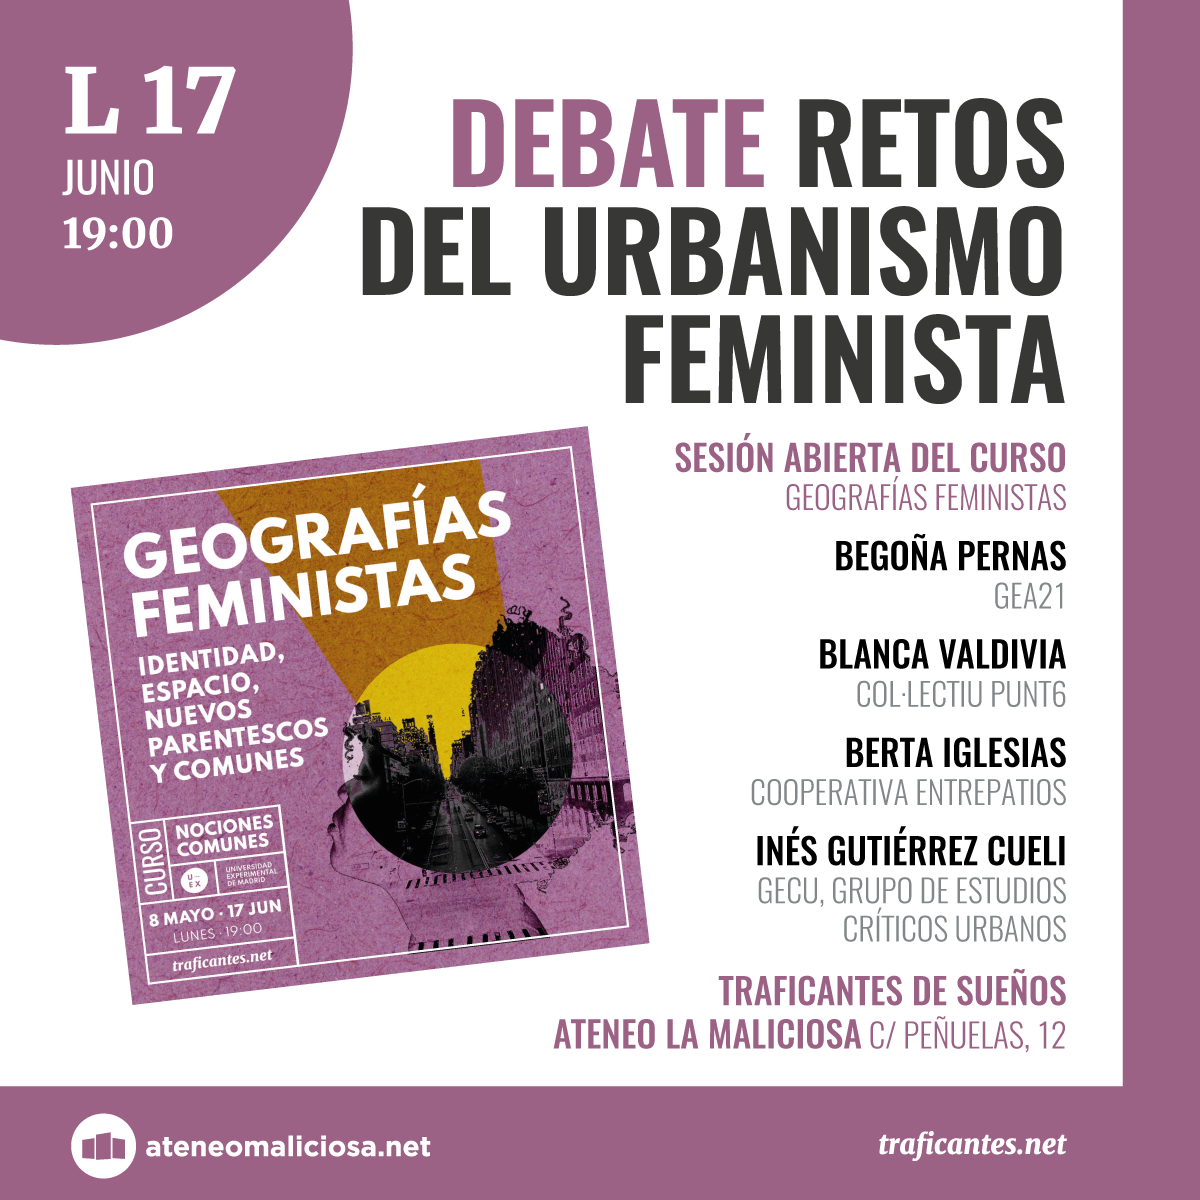 Retos del urbanismo feminista